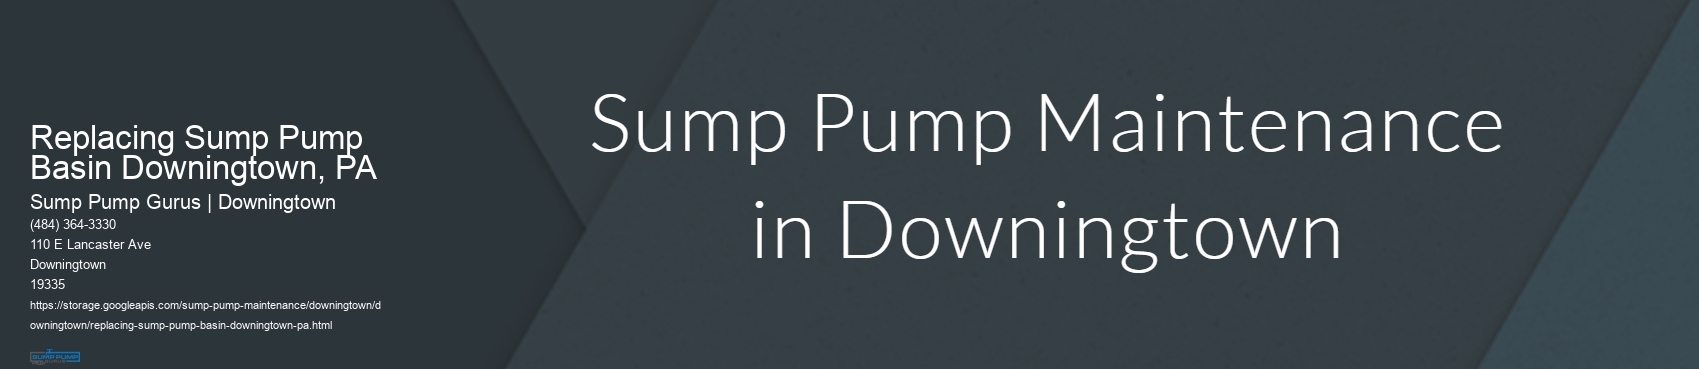 Replacing Sump Pump Basin Downingtown, PA